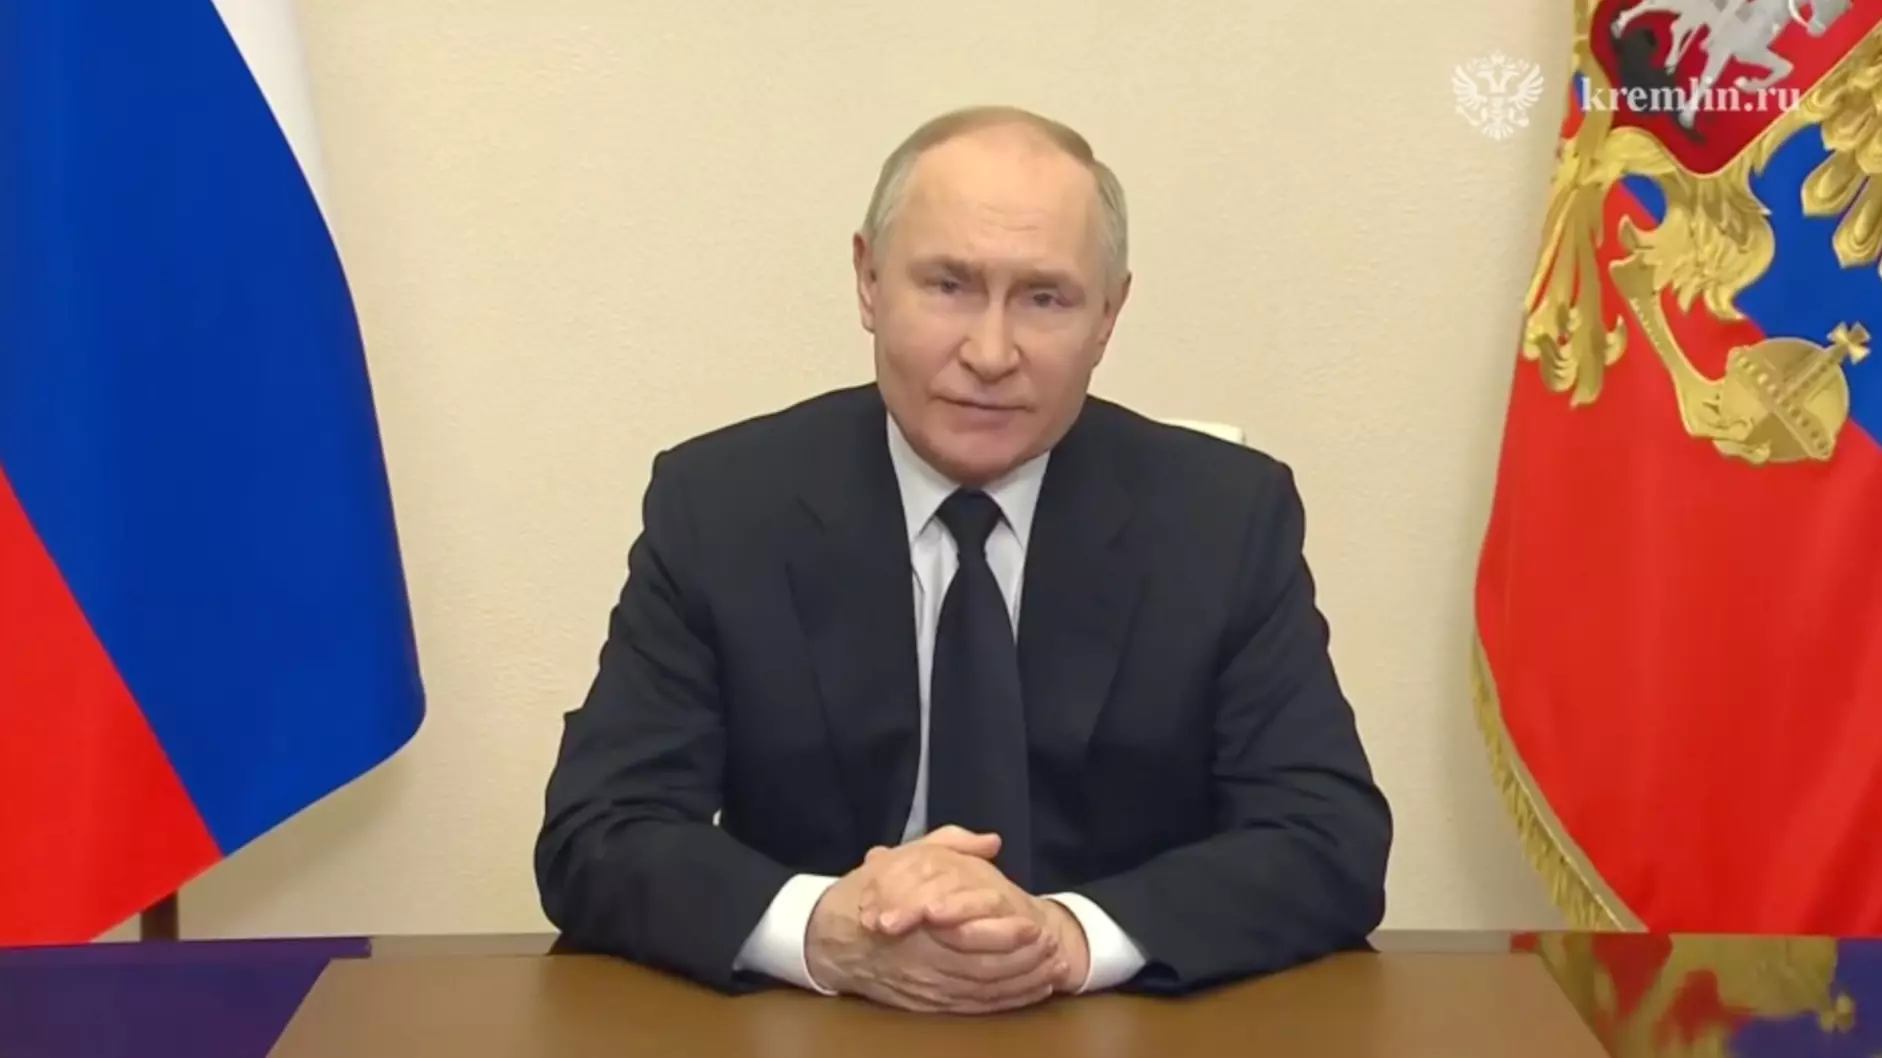 Путин объявил 24 марта днем общенационального траура. Что он еще сказал о теракте